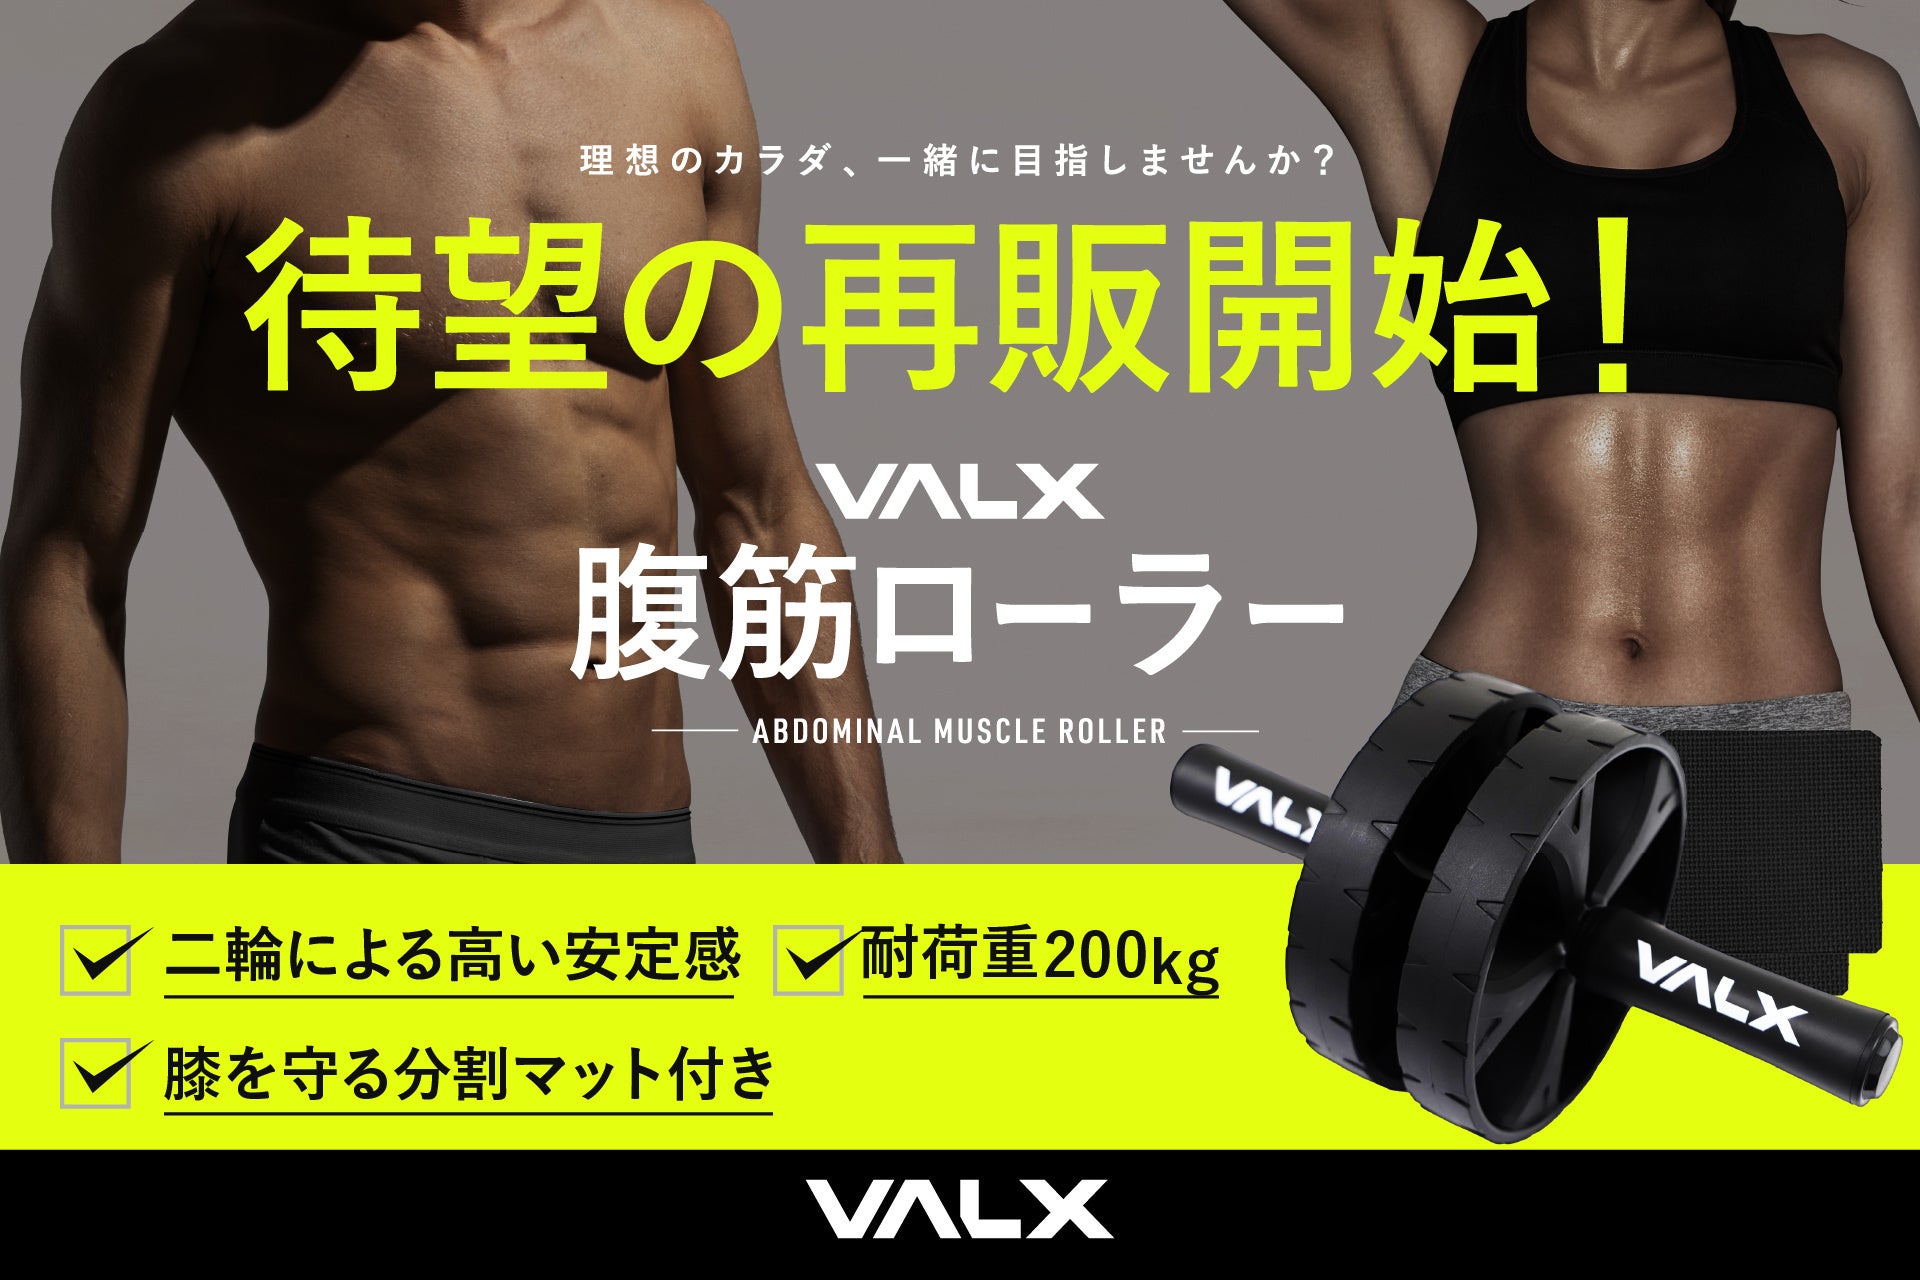 SNSでも話題の人気商品「VALX腹筋ローラー」が待望の再販売